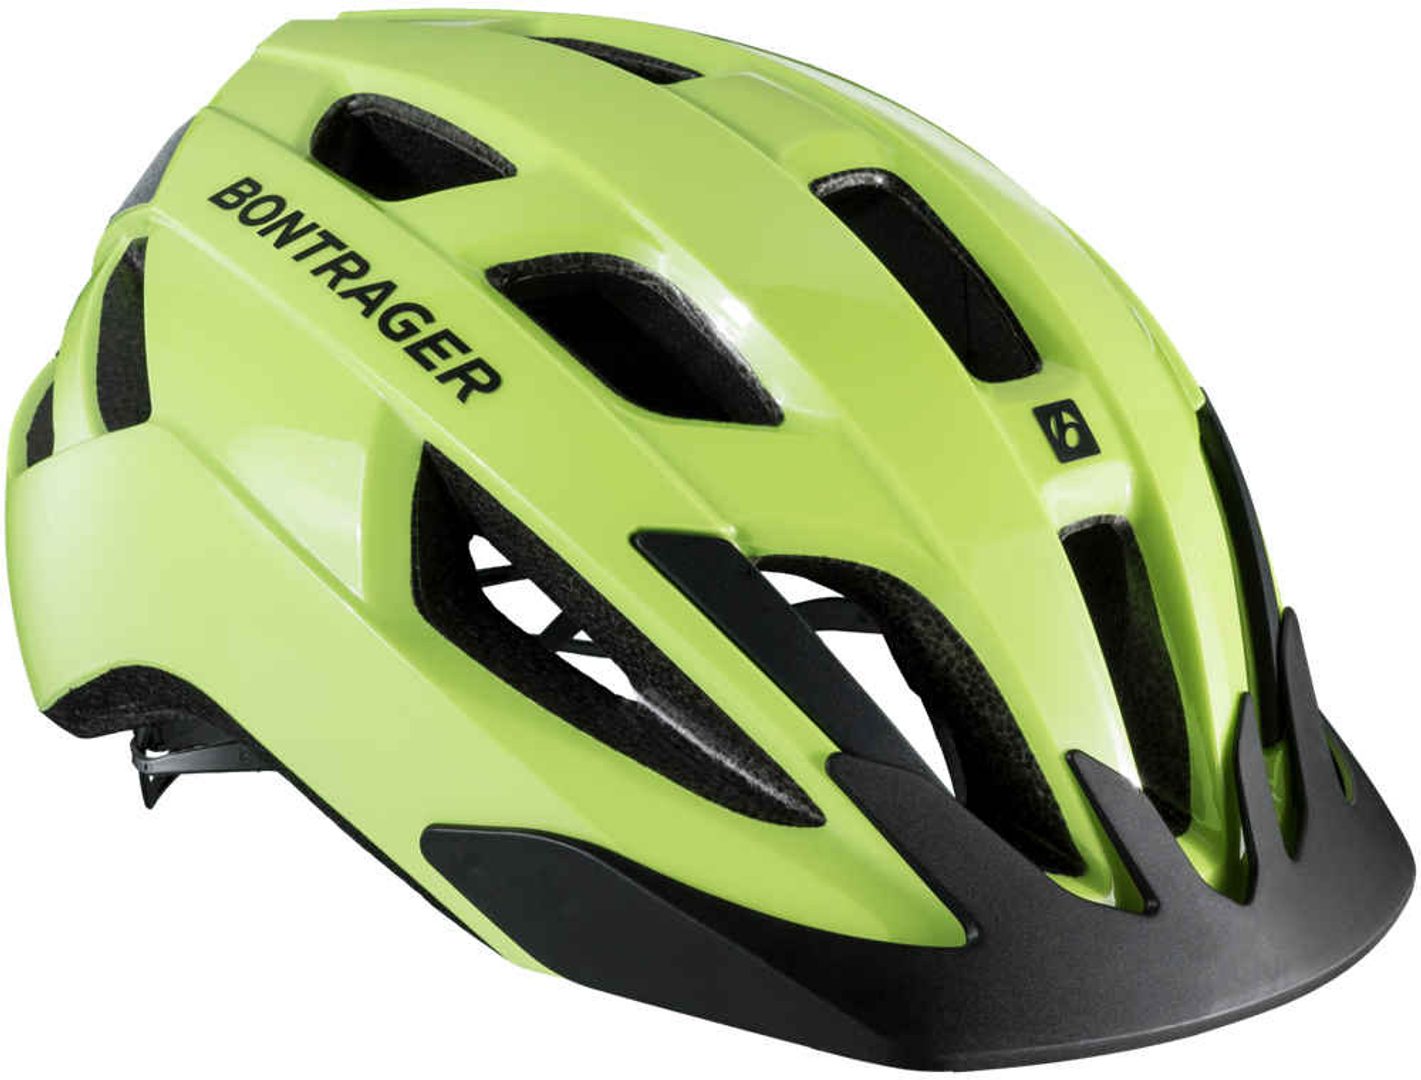 Bontrager-Fidlock Snap Helmet Buckle